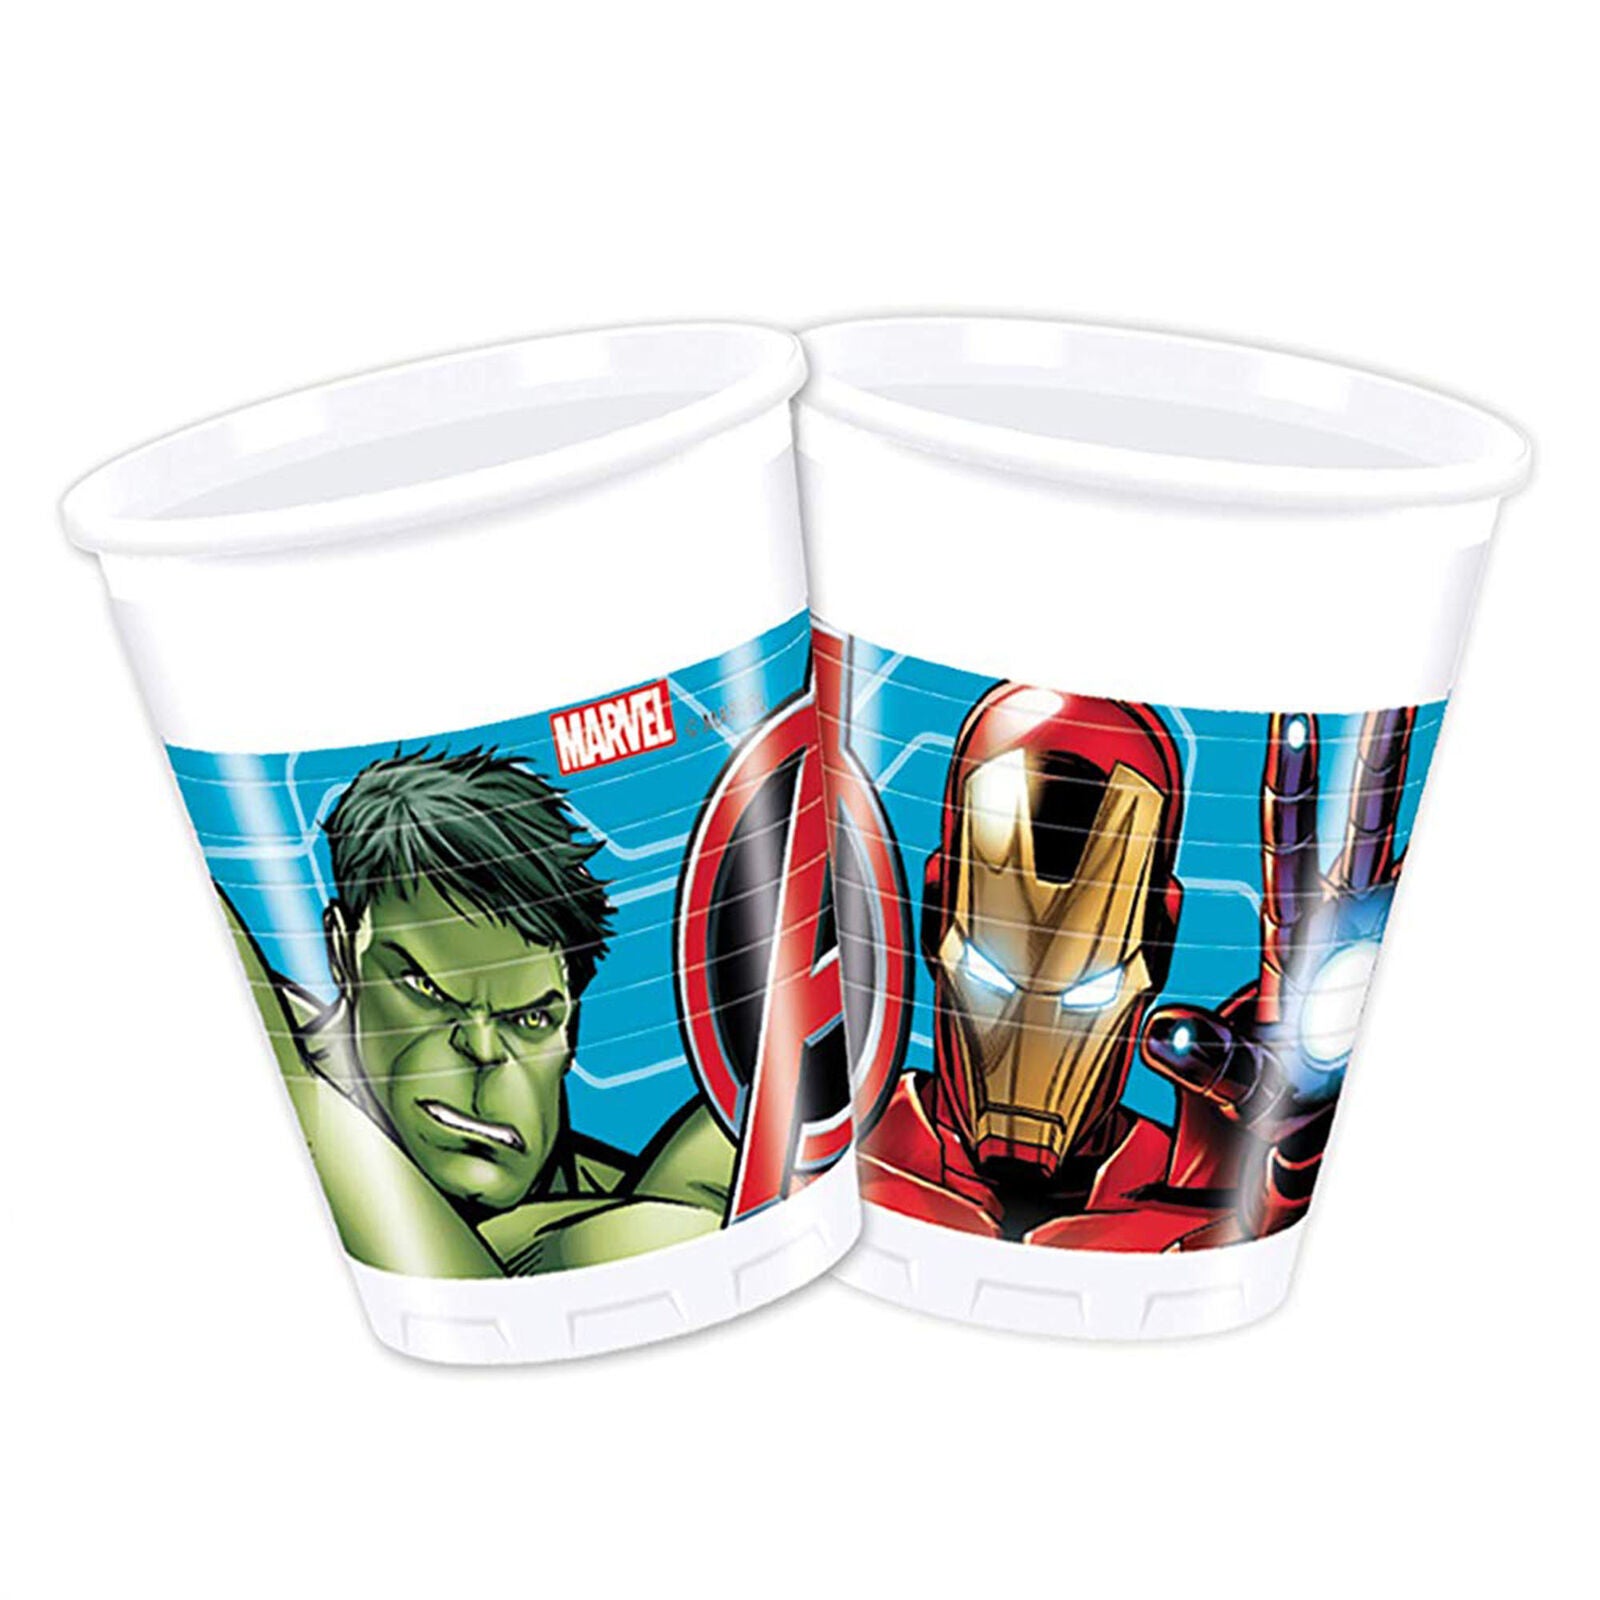 Kit party Marvel Avengers 24 persone bicchieri piatti tovaglia tovaglioli 1395